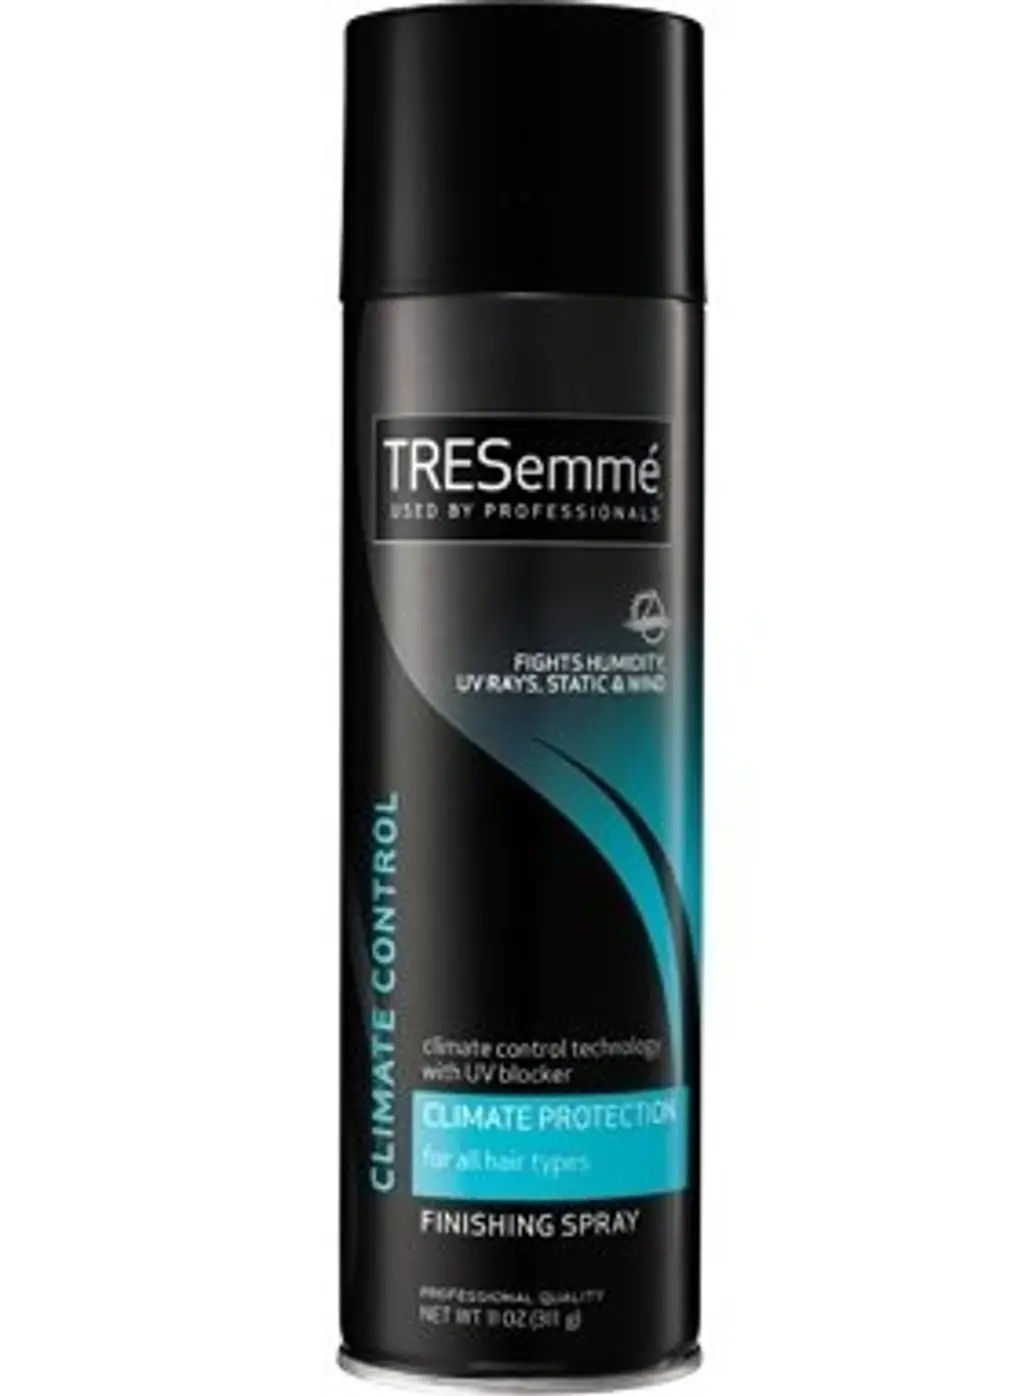 TRESemmé – Climate Control Hairspray